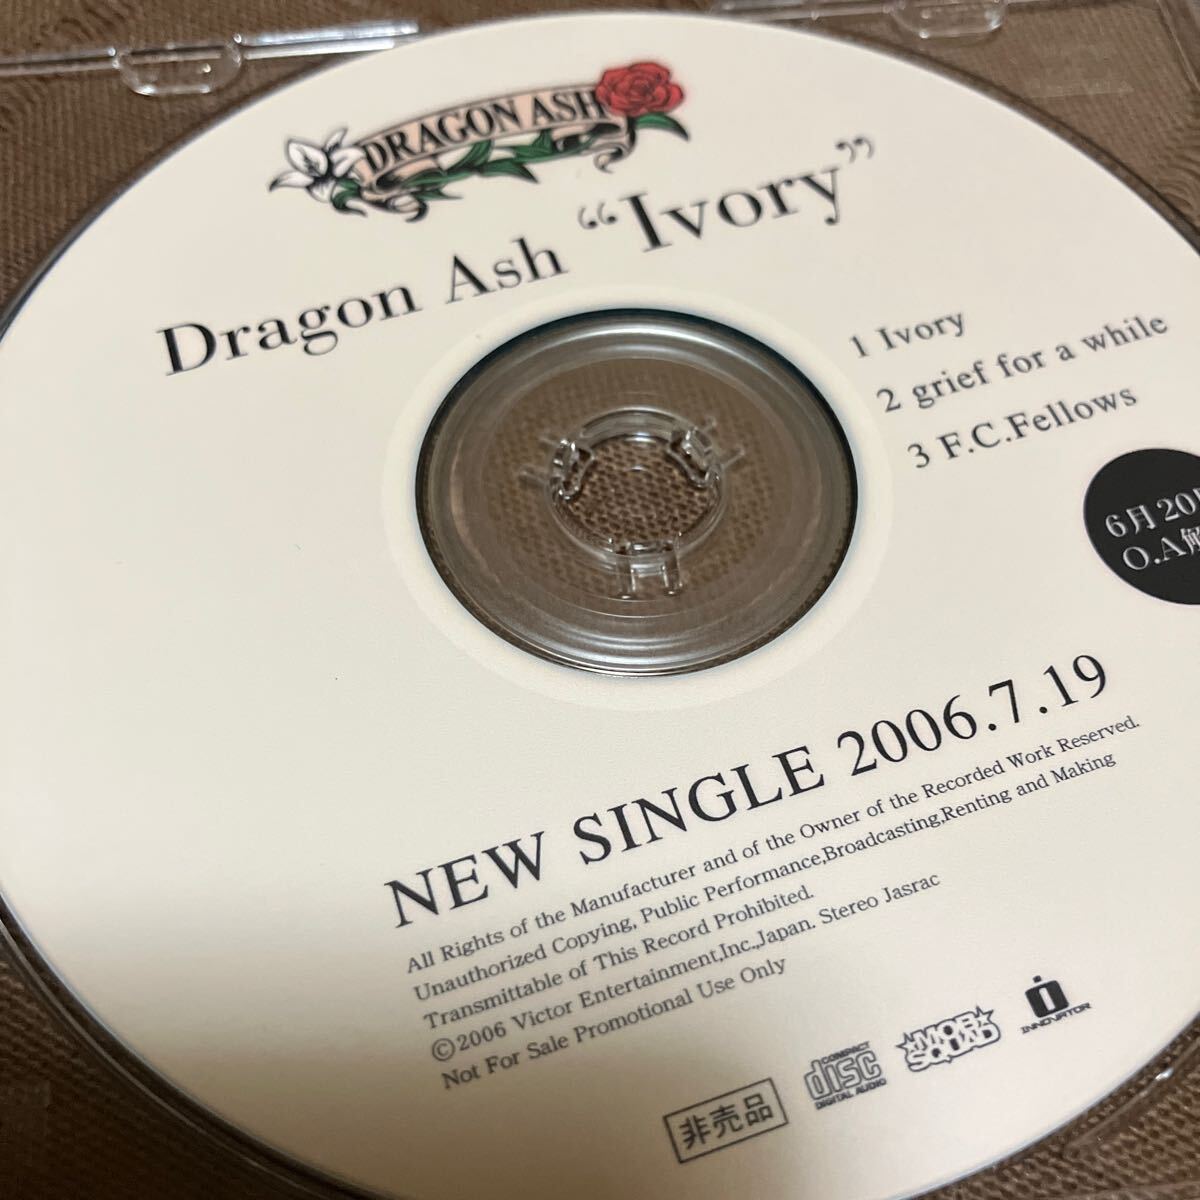 非売品 音楽CD Dragon Ash ドラゴン・アッシュ Ivory / grief for a while / F.C. Fellows NEW SINGLE 2006.7.19の画像3